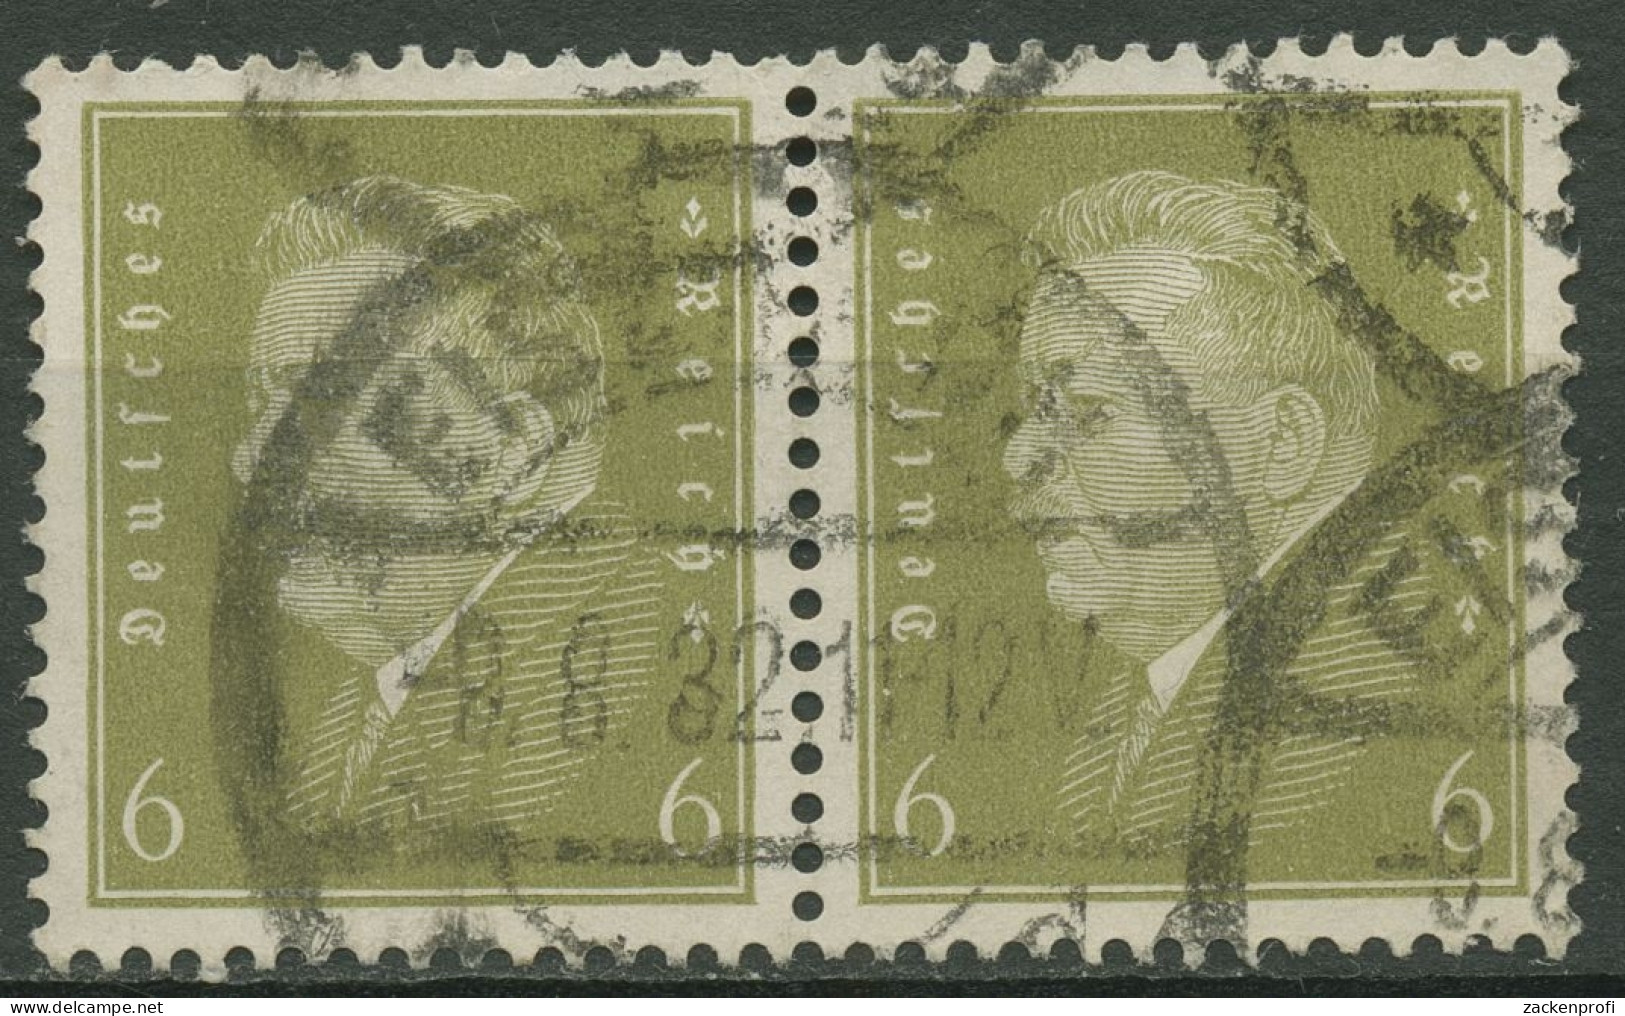 Deutsches Reich 1932 Reichspräsident Ebert Waagerechtes Paar 465 Gestempelt - Used Stamps